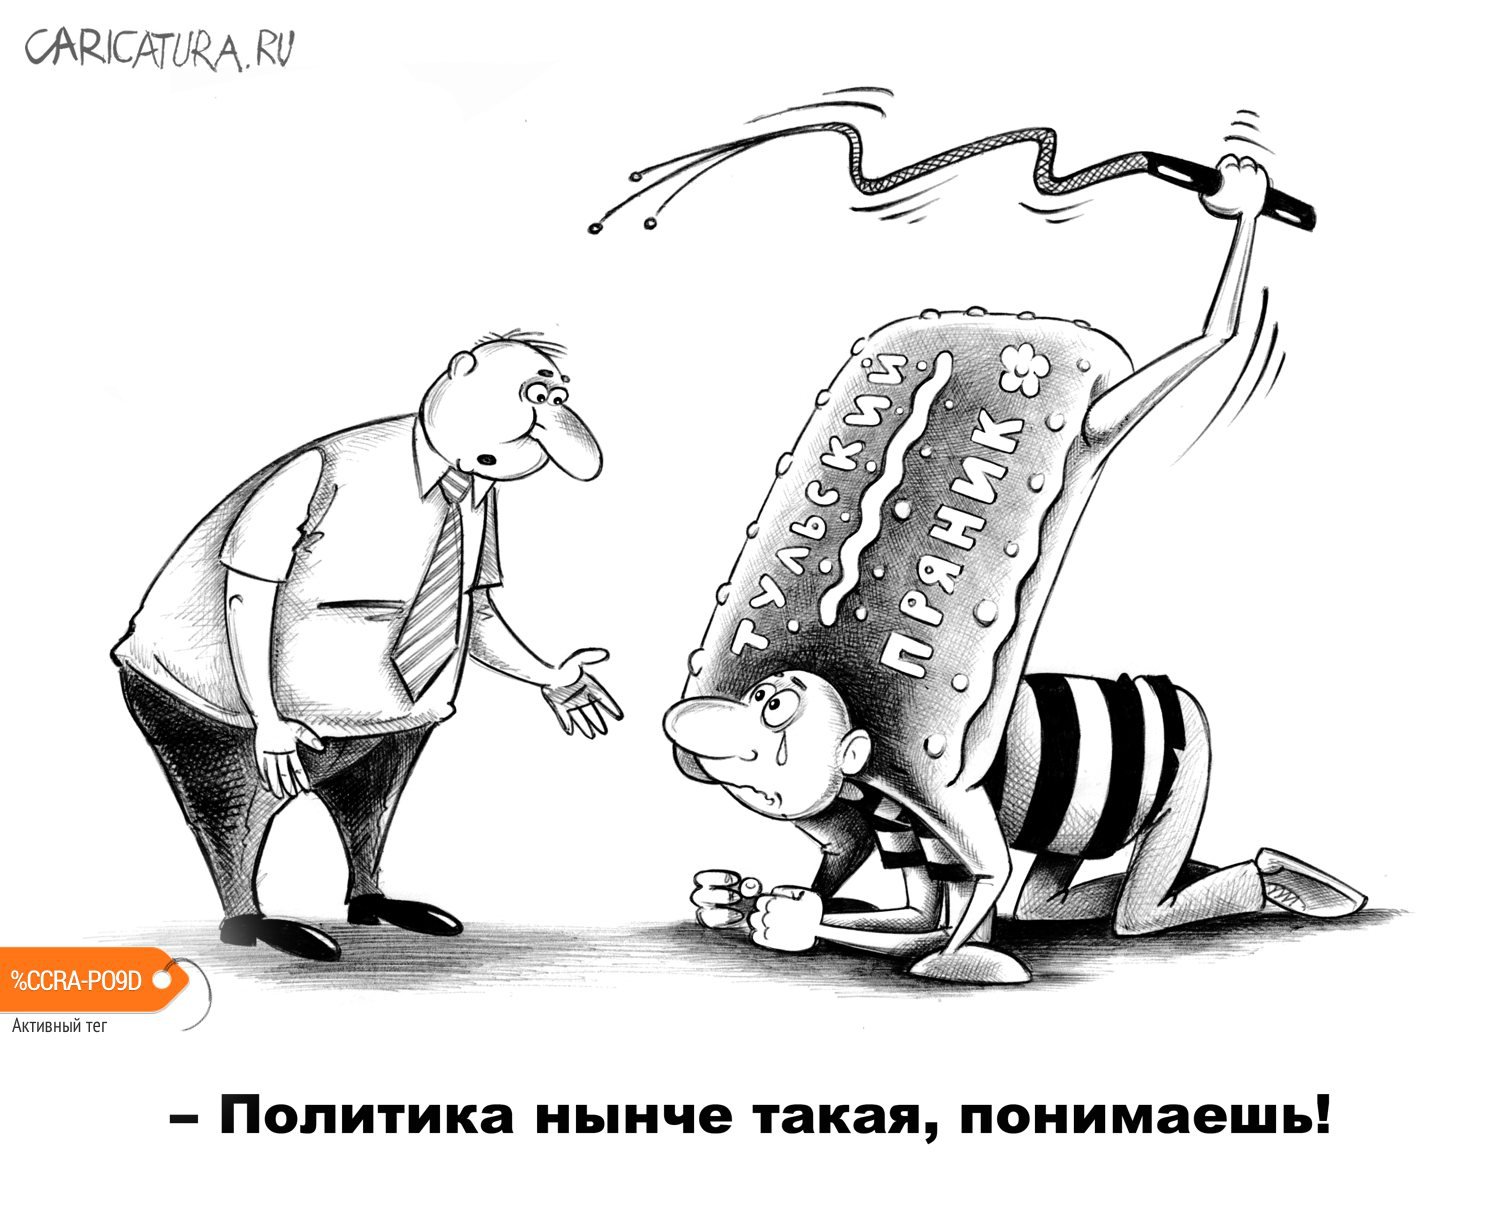 Карикатура "Кнут и пряник", Сергей Корсун